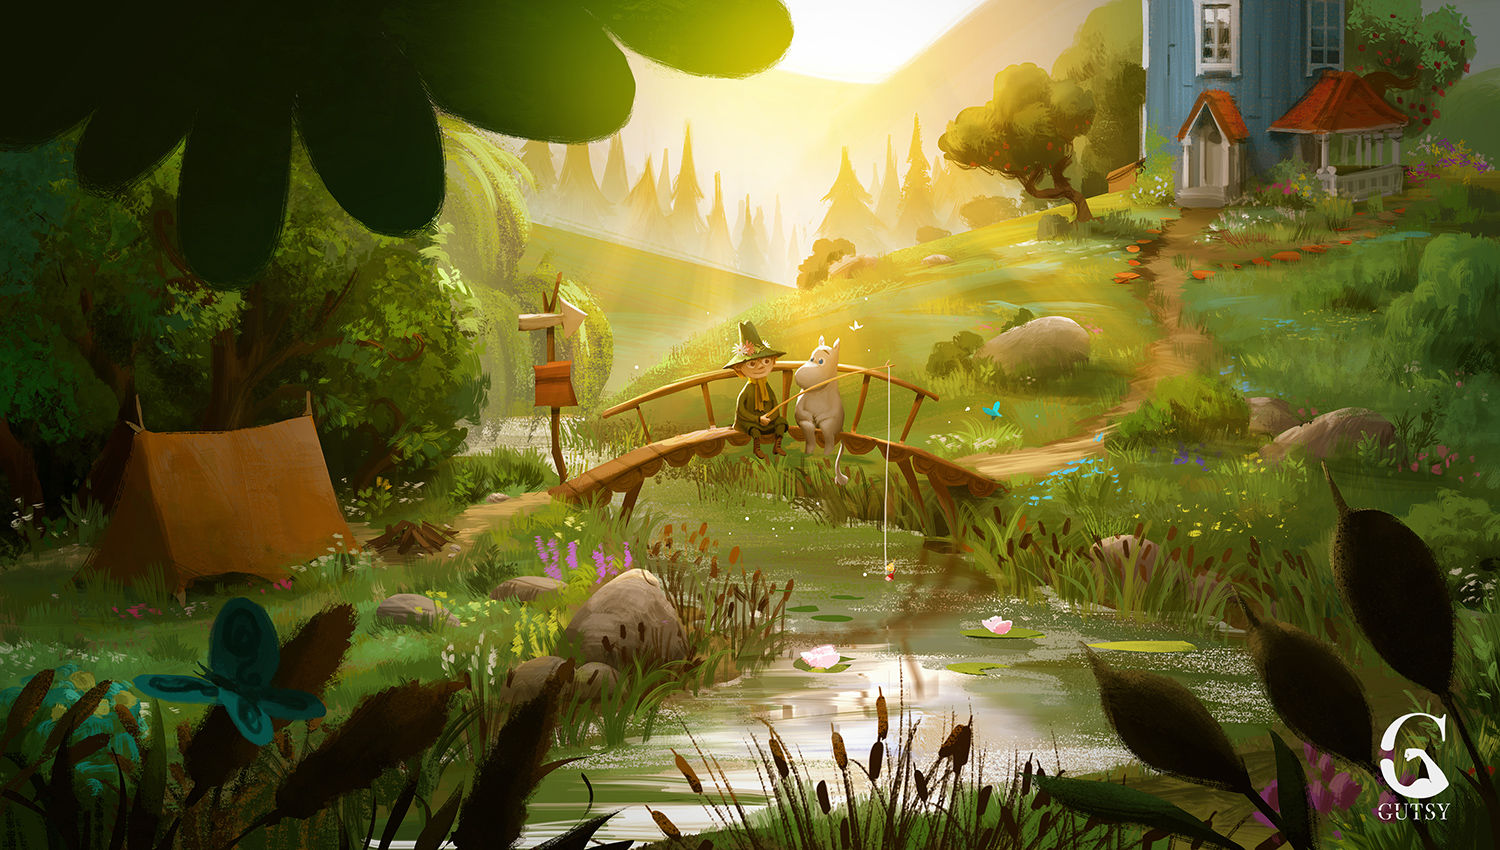 neues animationstapete,action adventure spiel,natur,computerspiel,urwald,landschaft